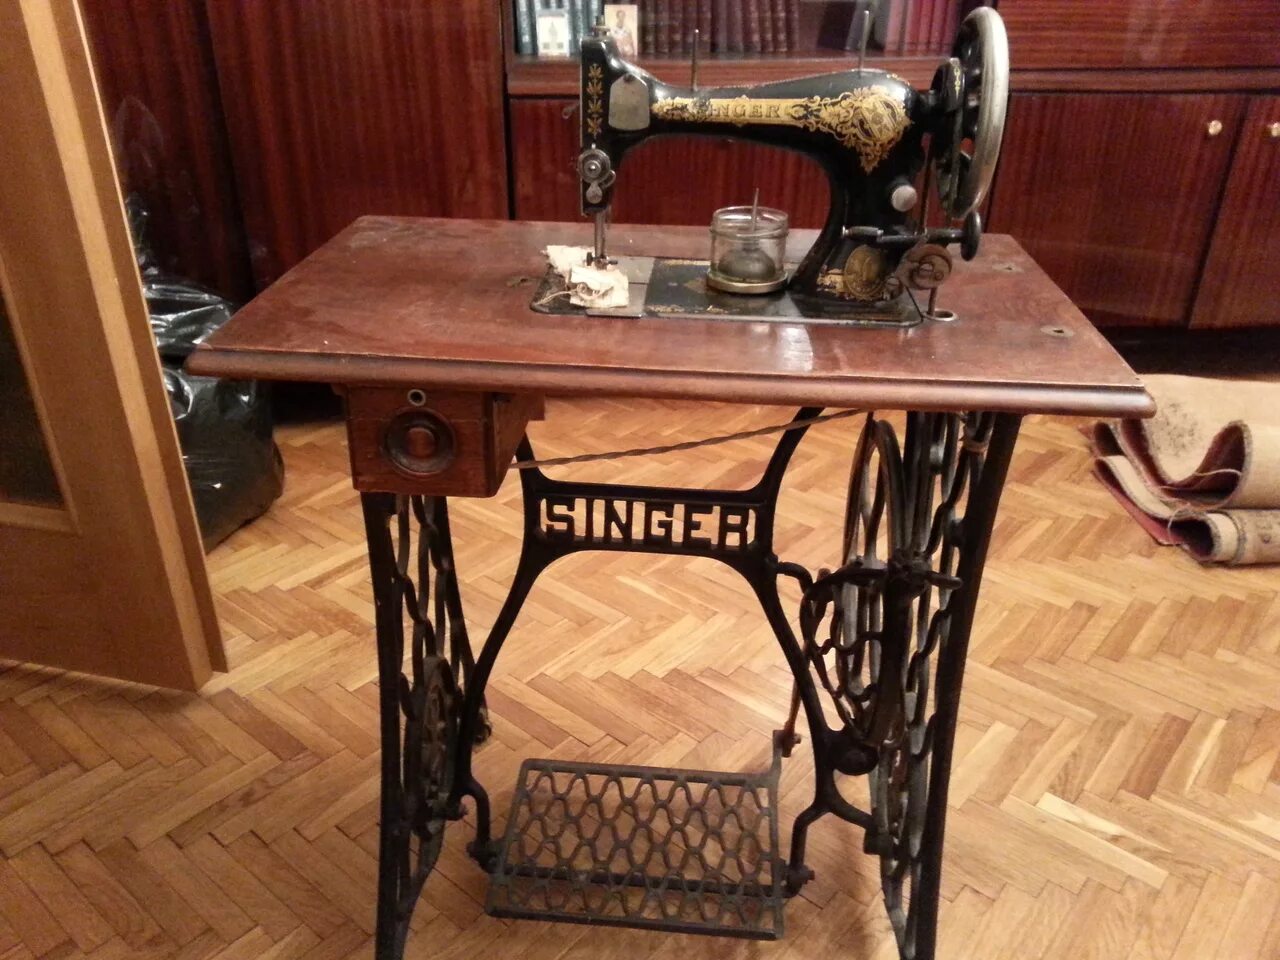 Zinger швейная машинка а3535836. Швейная машинка (Zinger super 2001). Швейная машинка Зингер 1875. Зингер швейная машинка 1908. Как определить машинку зингер